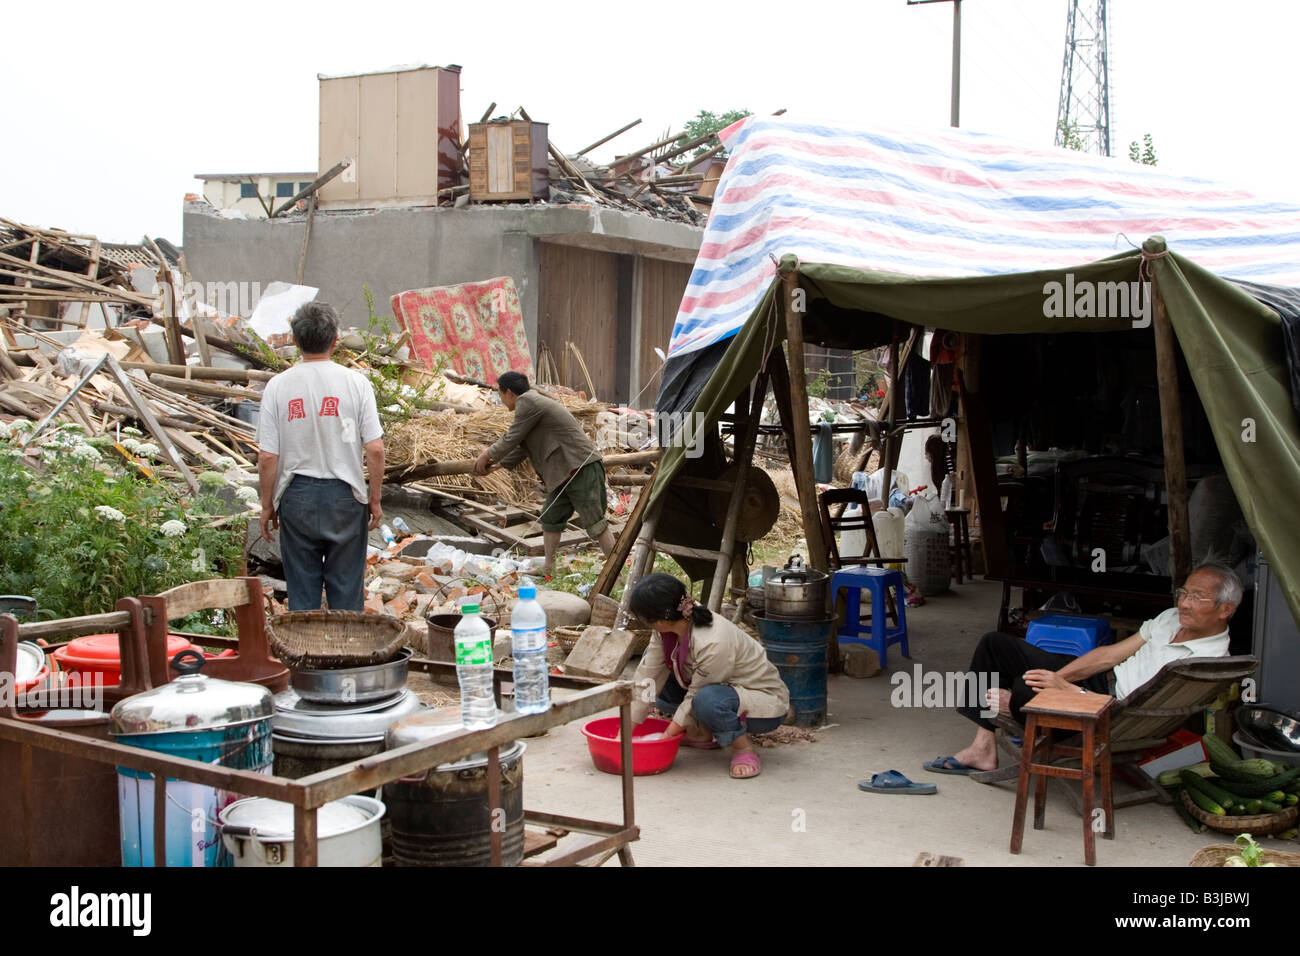 Familie in behelfsmäßigen Zelt außerhalb der eigenen Wohnung zerstört durch das Erdbeben vom 12 Mai 2008 in Sichuan, China Stockfoto